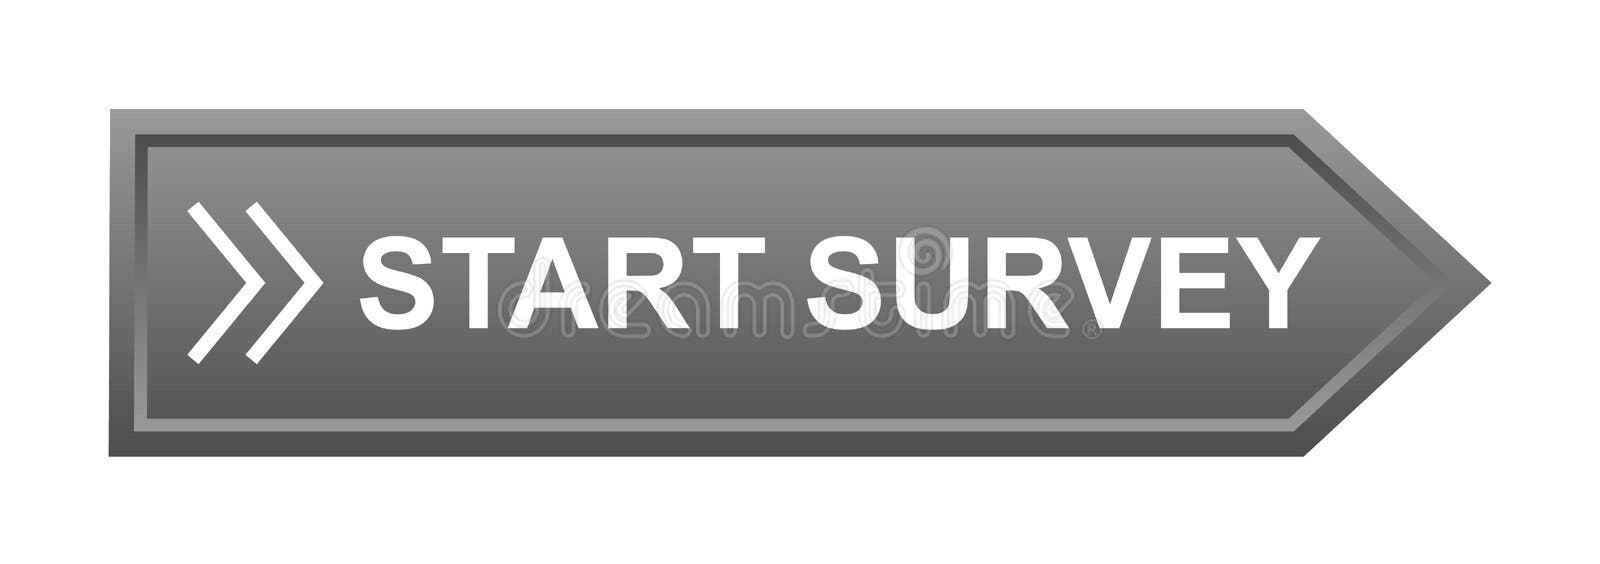 Survey button. Start survey button - editable vector illustration on  isolated wh , #ad, #survey, #editable, #Start, #Su…